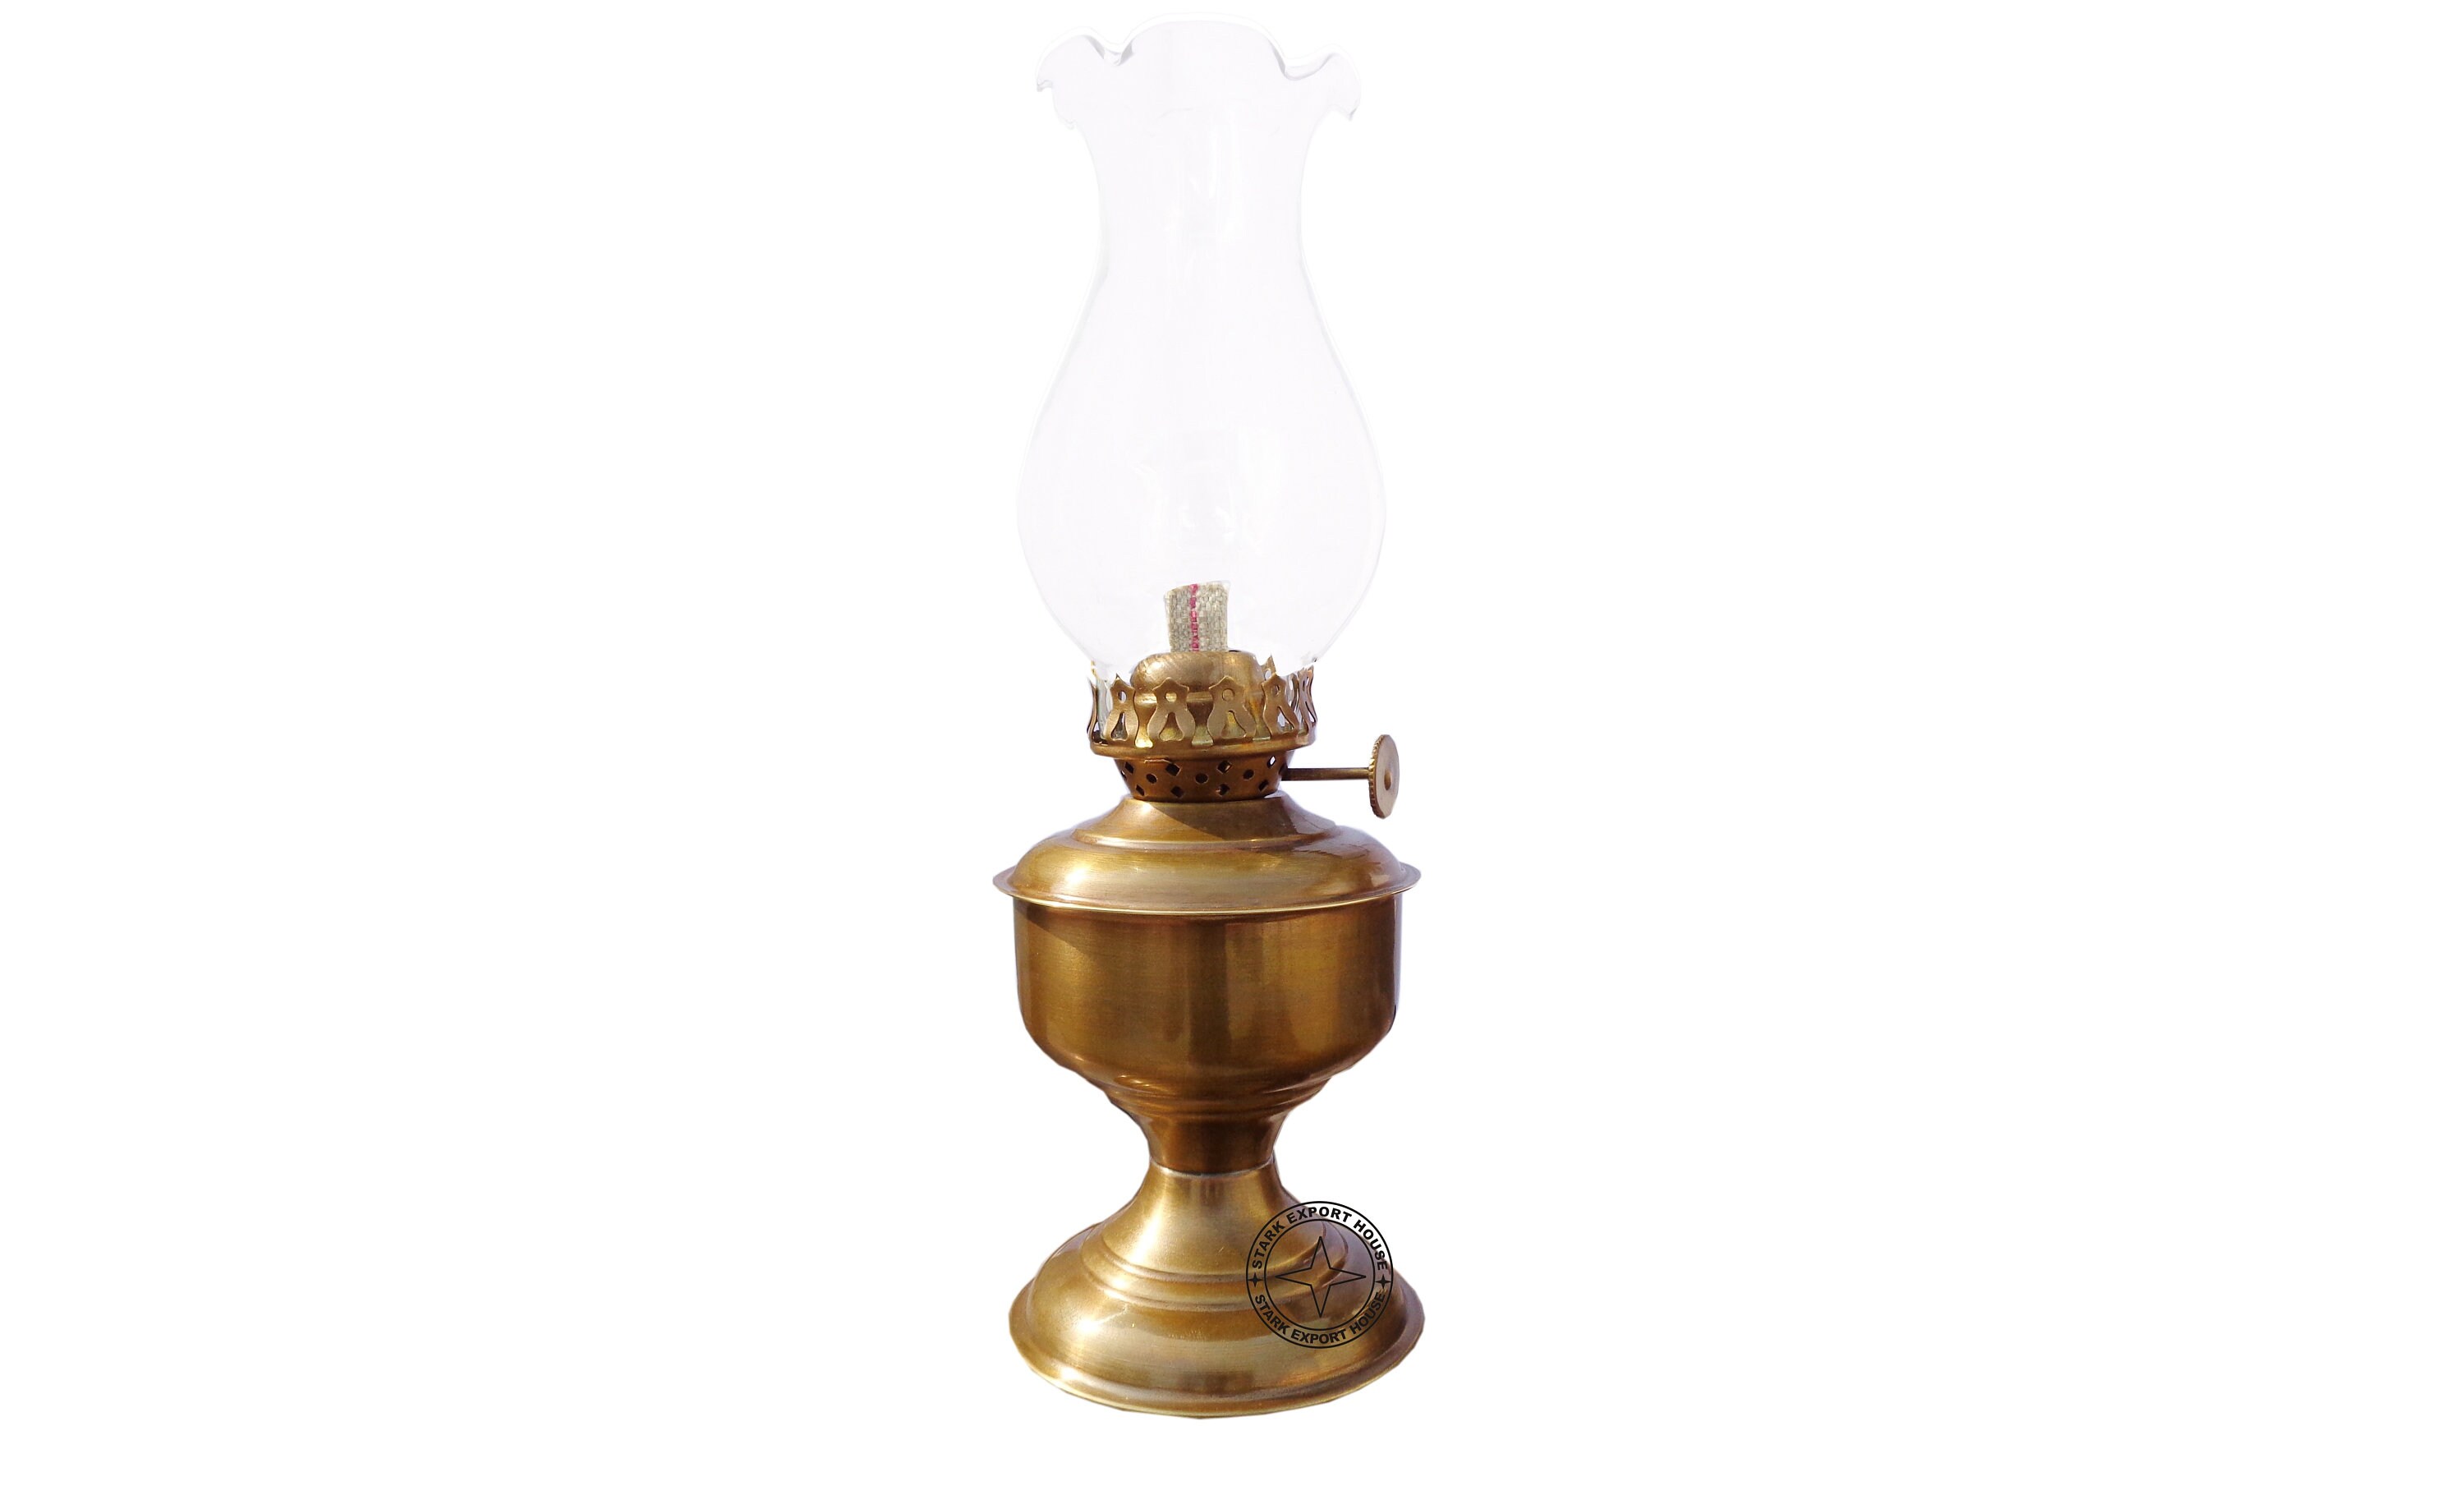 Vtg Glass Oil Lamp W/ Pressed Tapered Font & Ruffled Chimney Small Kerosene Lantern  Wick Included 